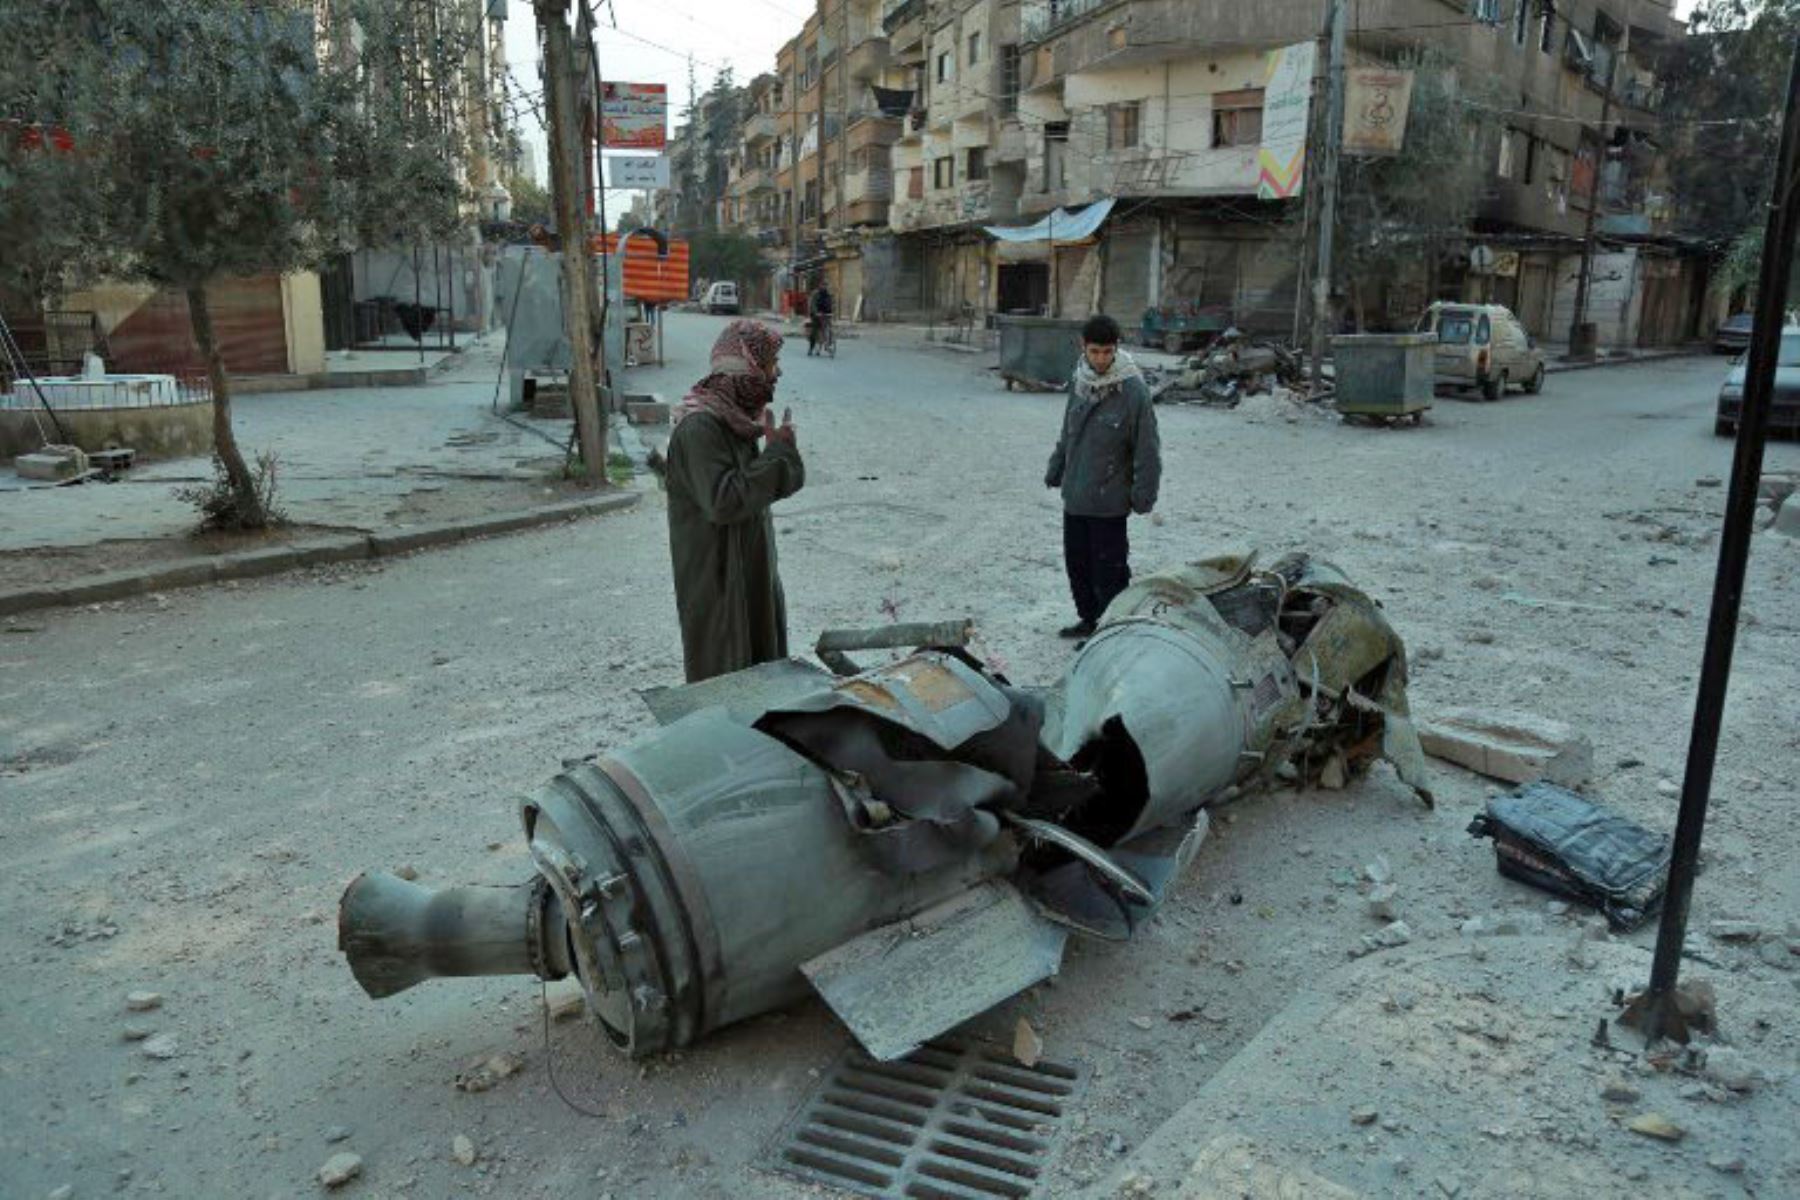 Hombres sirios pasan frente a los restos de un cohete en la ciudad de Douma, controlada por los rebeldes.Foto:AFP